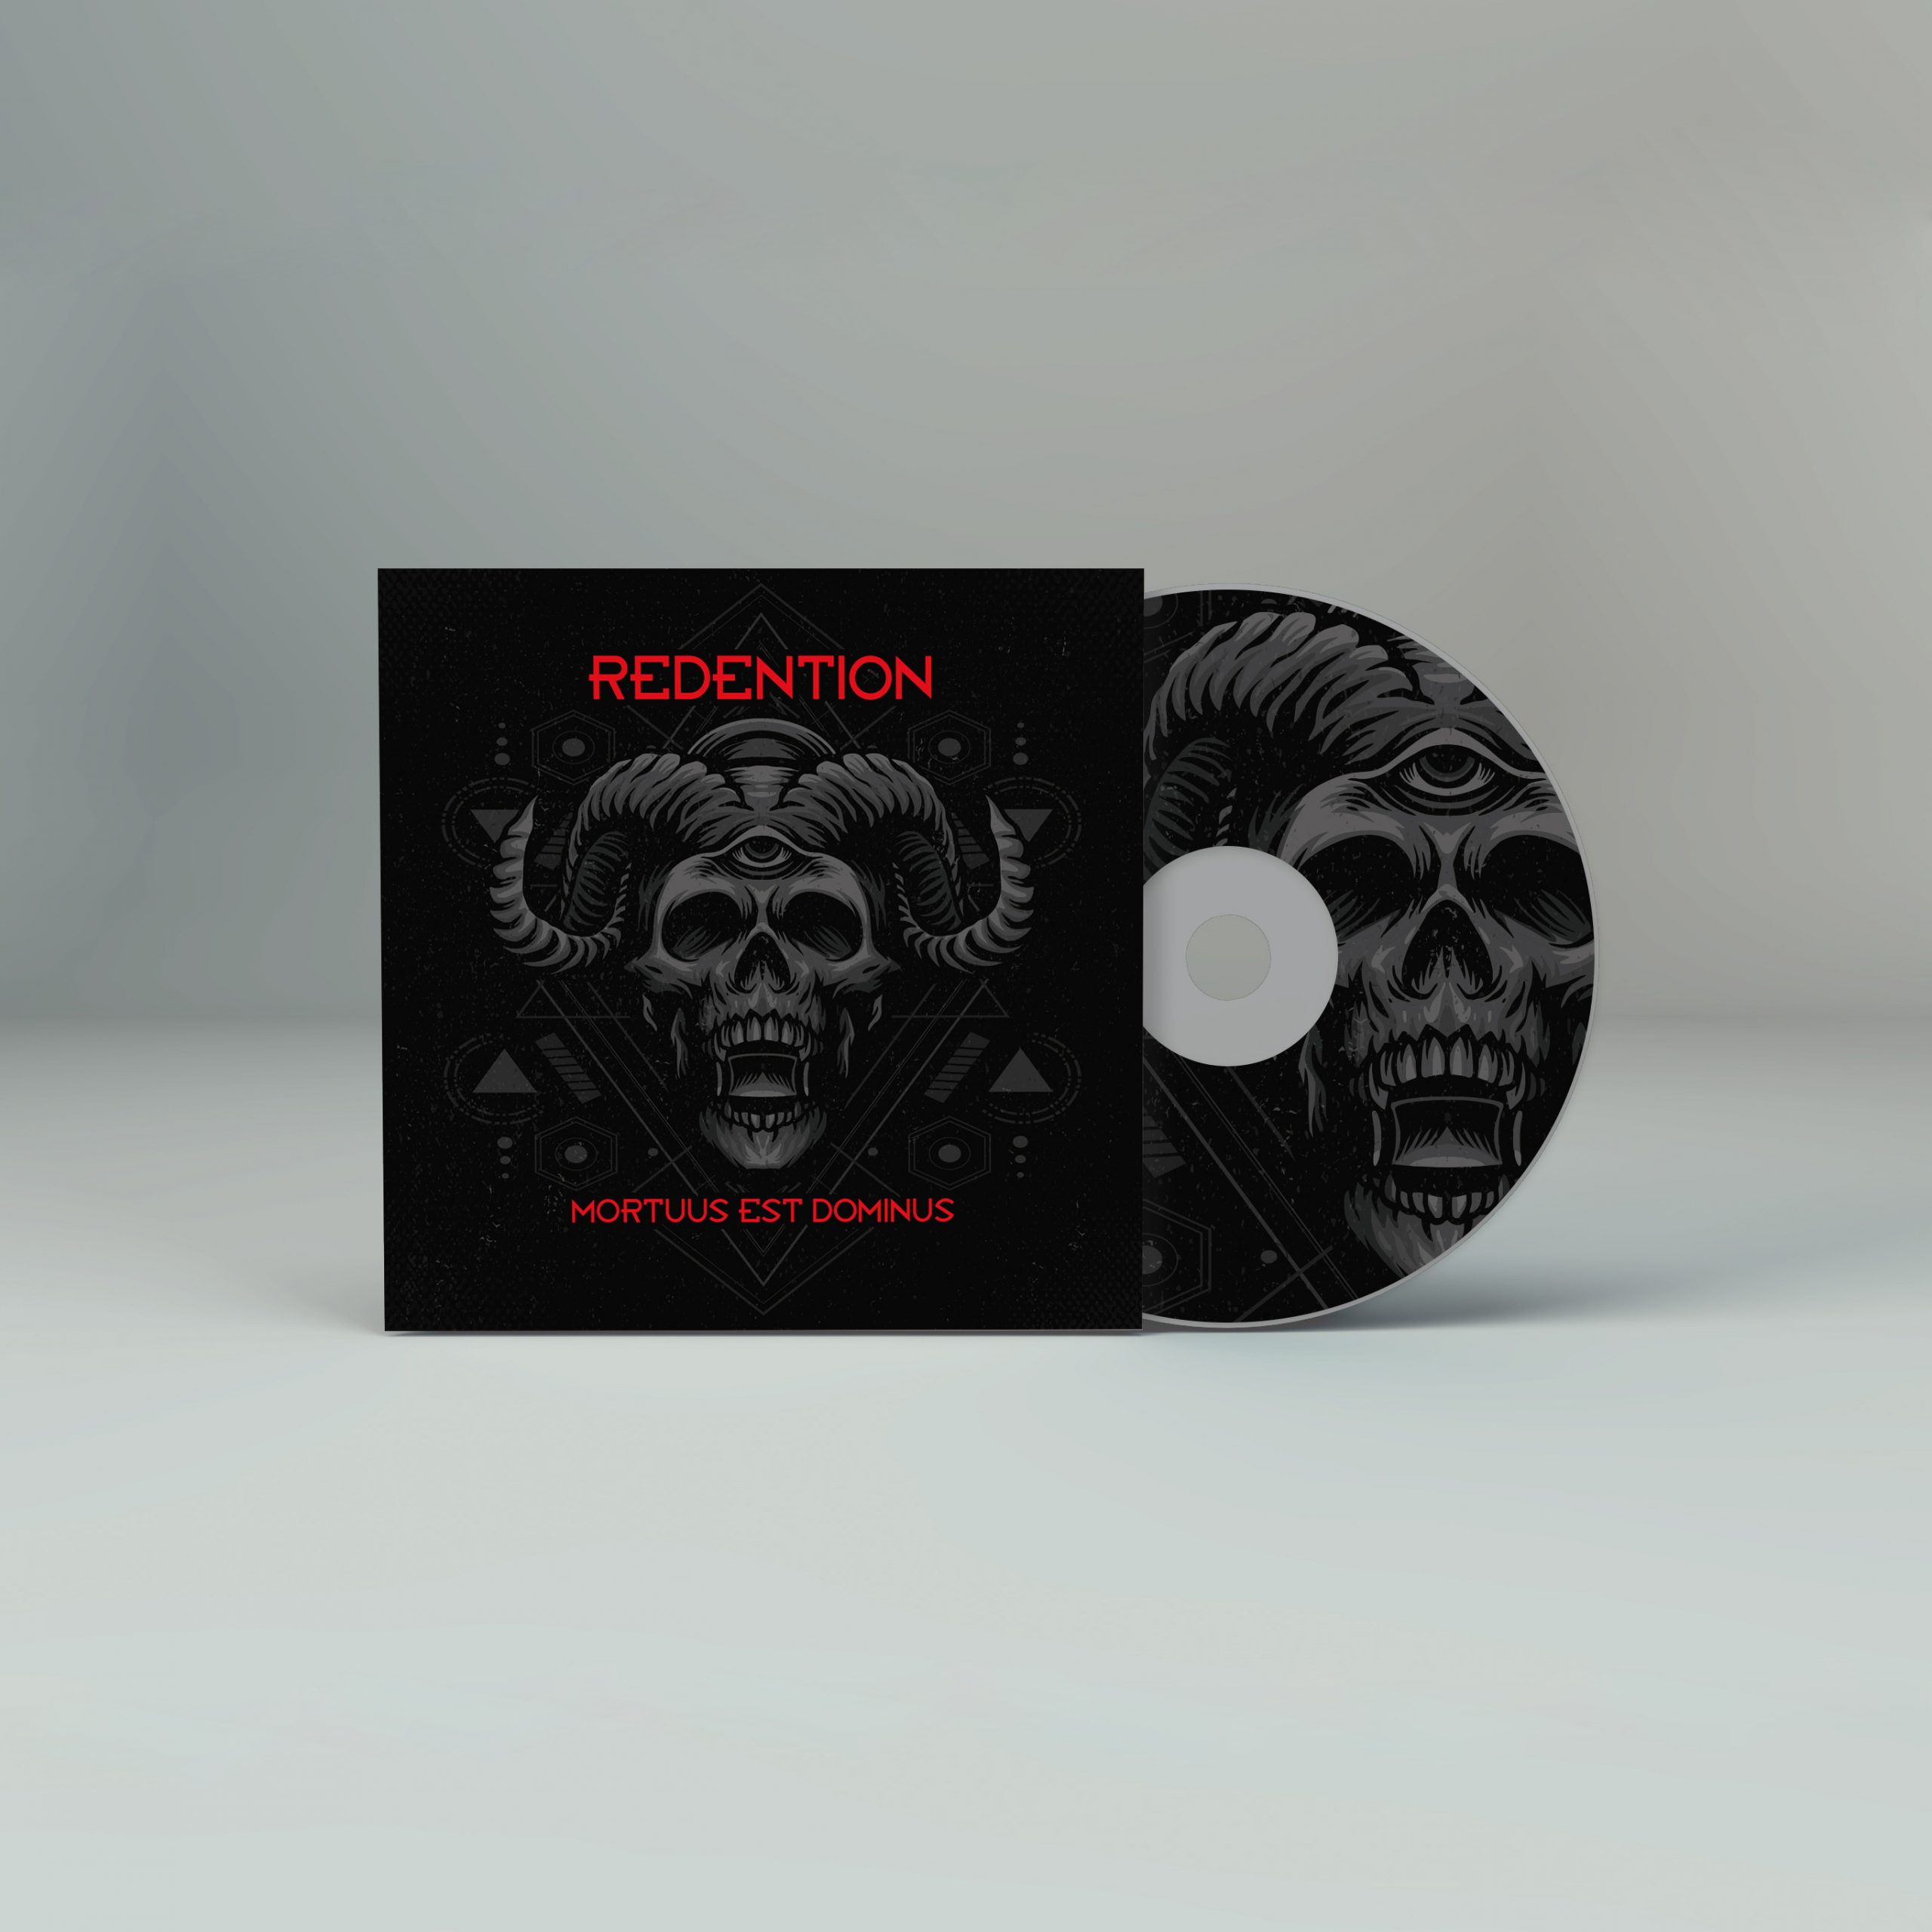 CD Artwork Mockup_redention